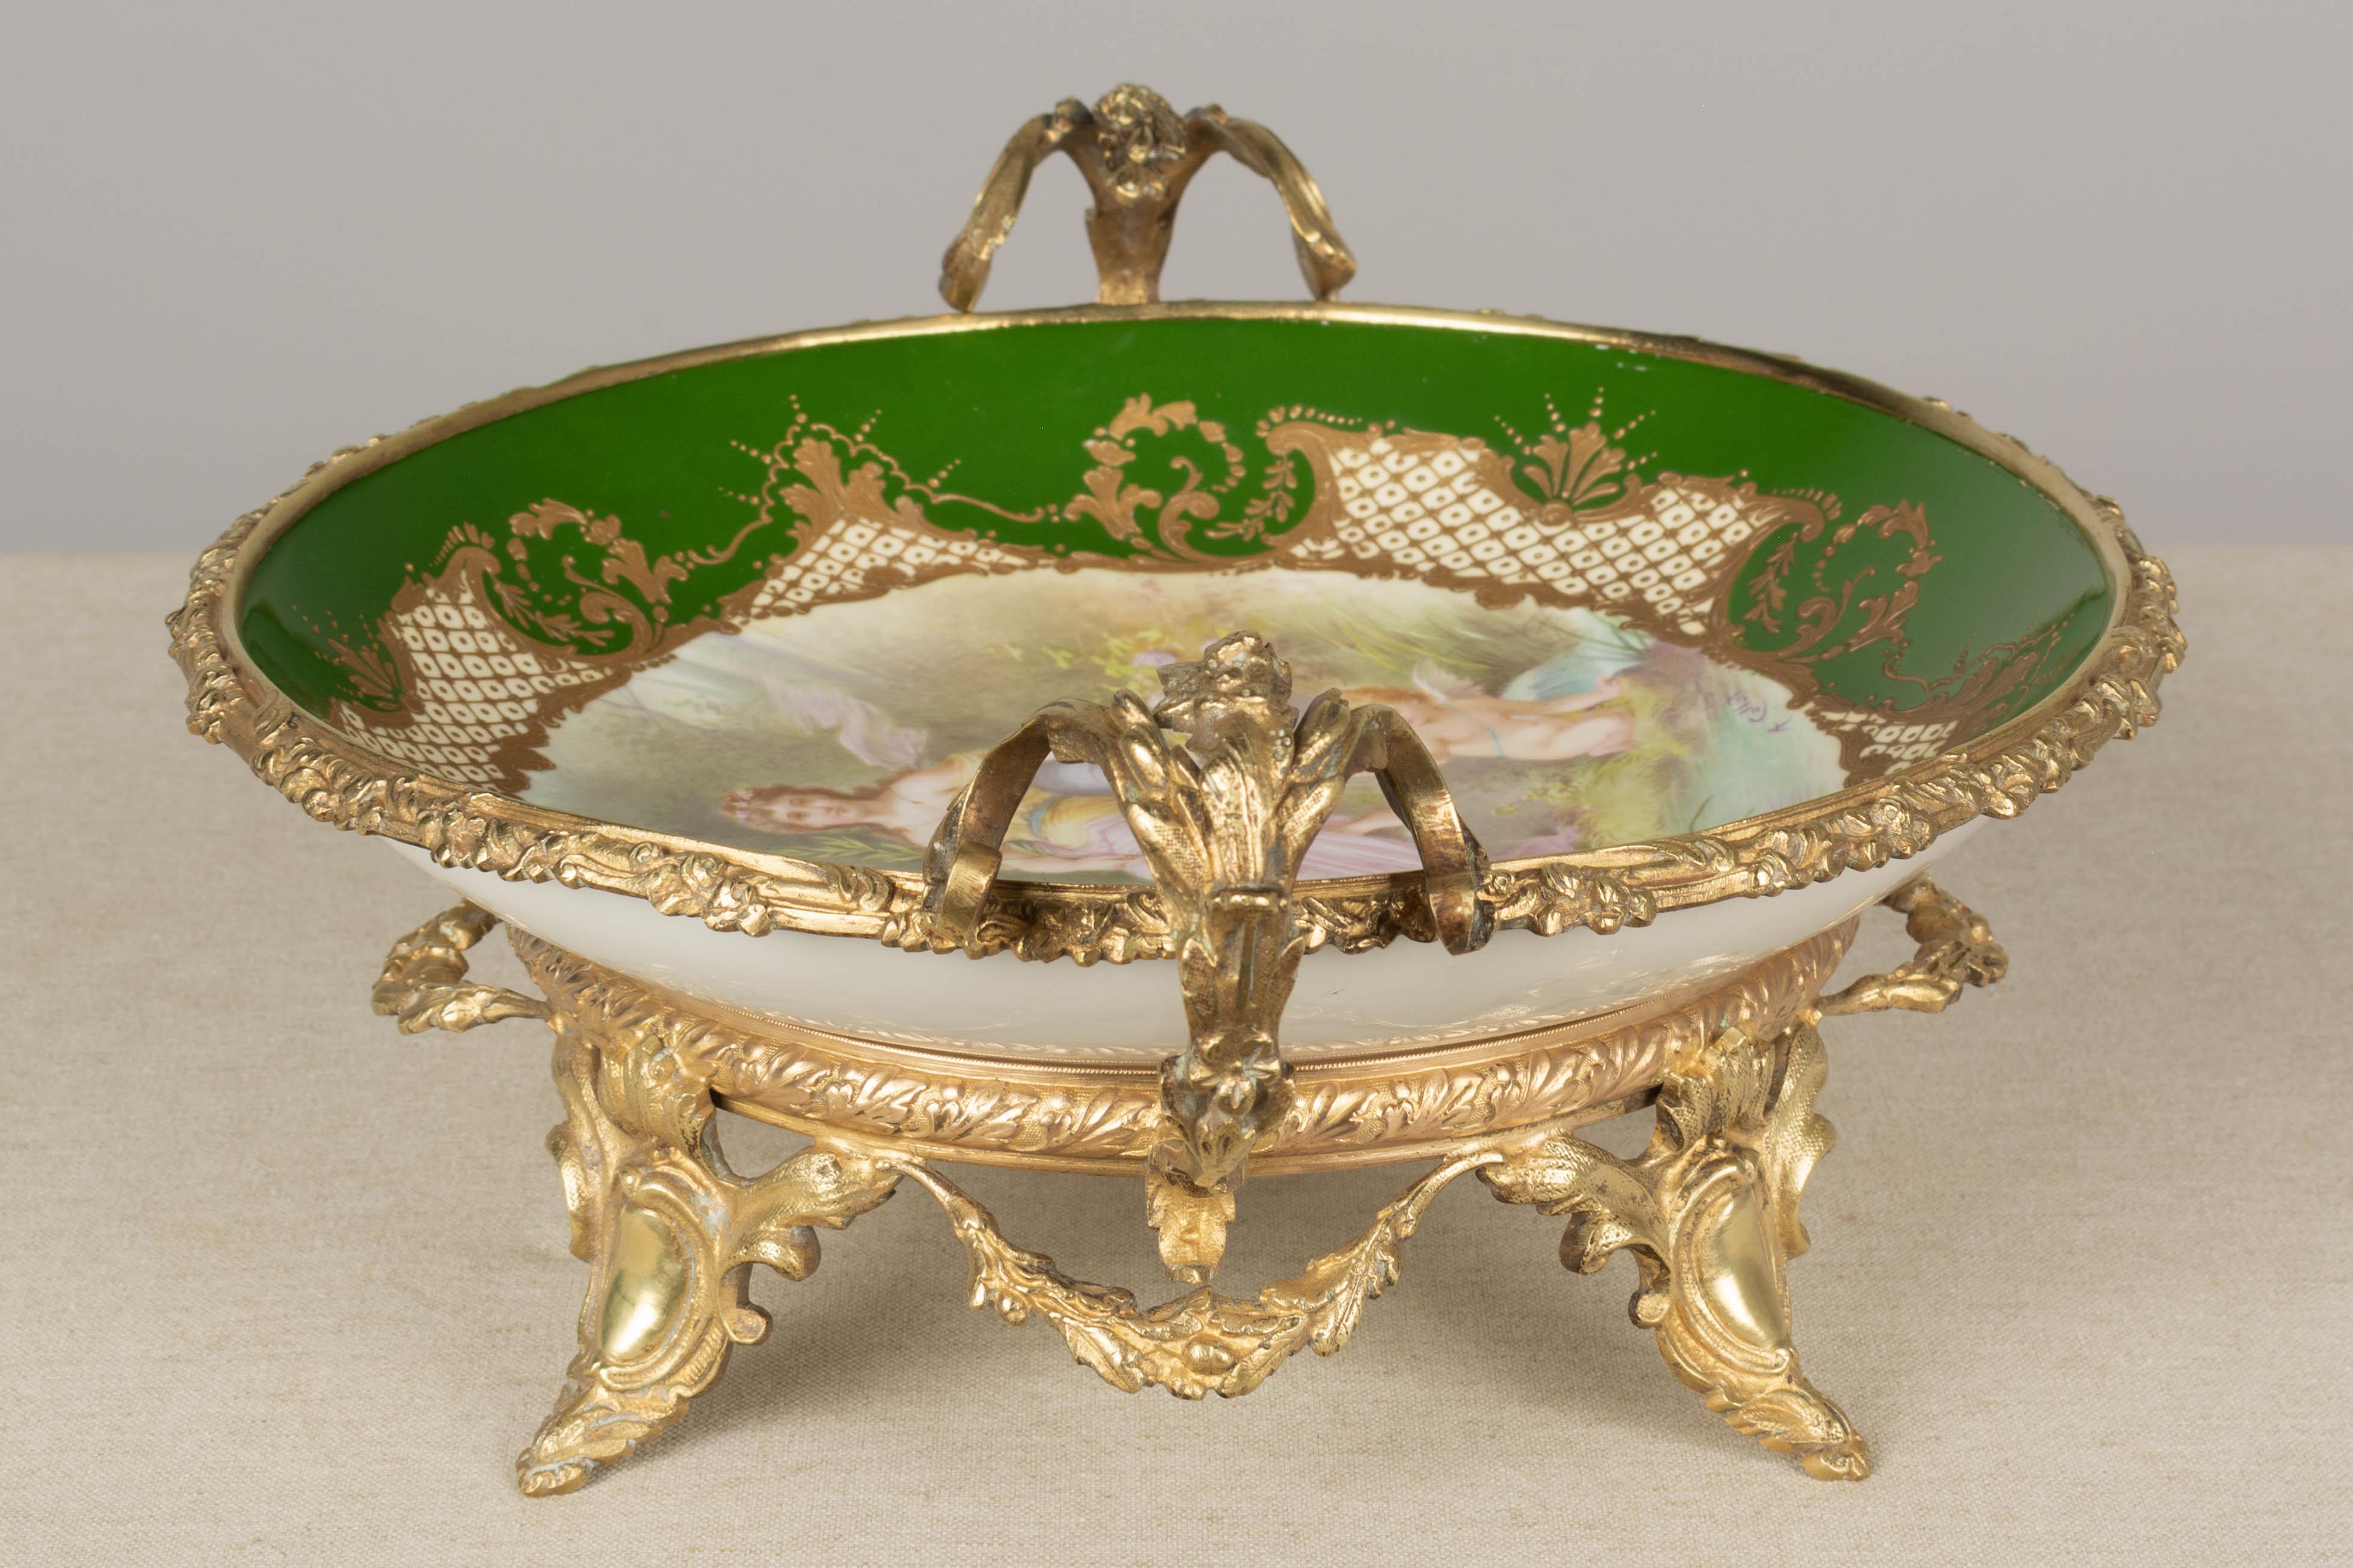 19th Century French Ormolu Sèvres Porcelain Centerpiece Bowl For Sale 4